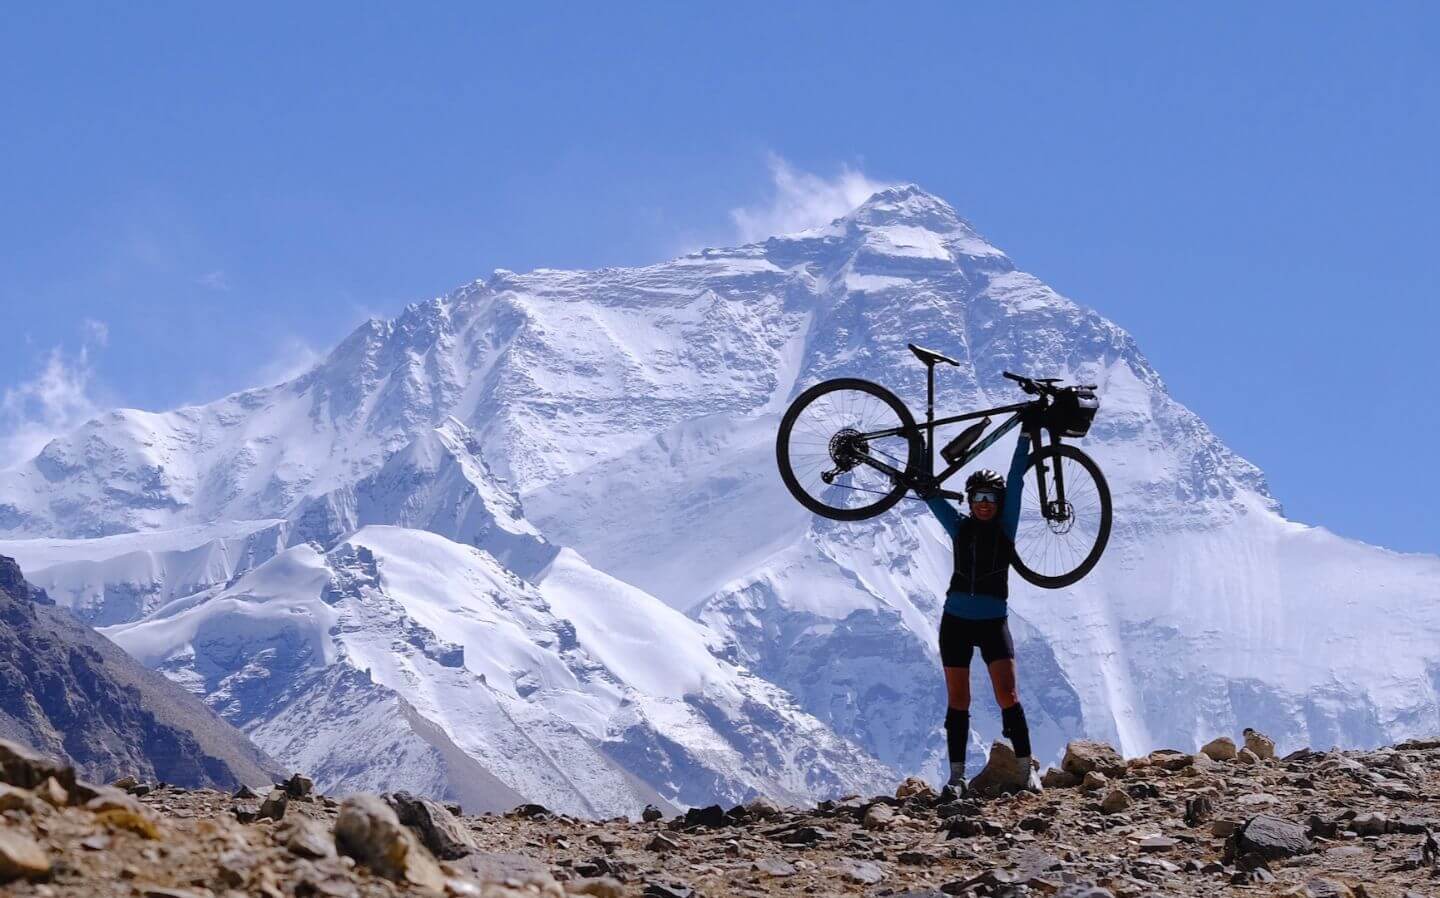 Himalayas - Nepal Cycling Tour